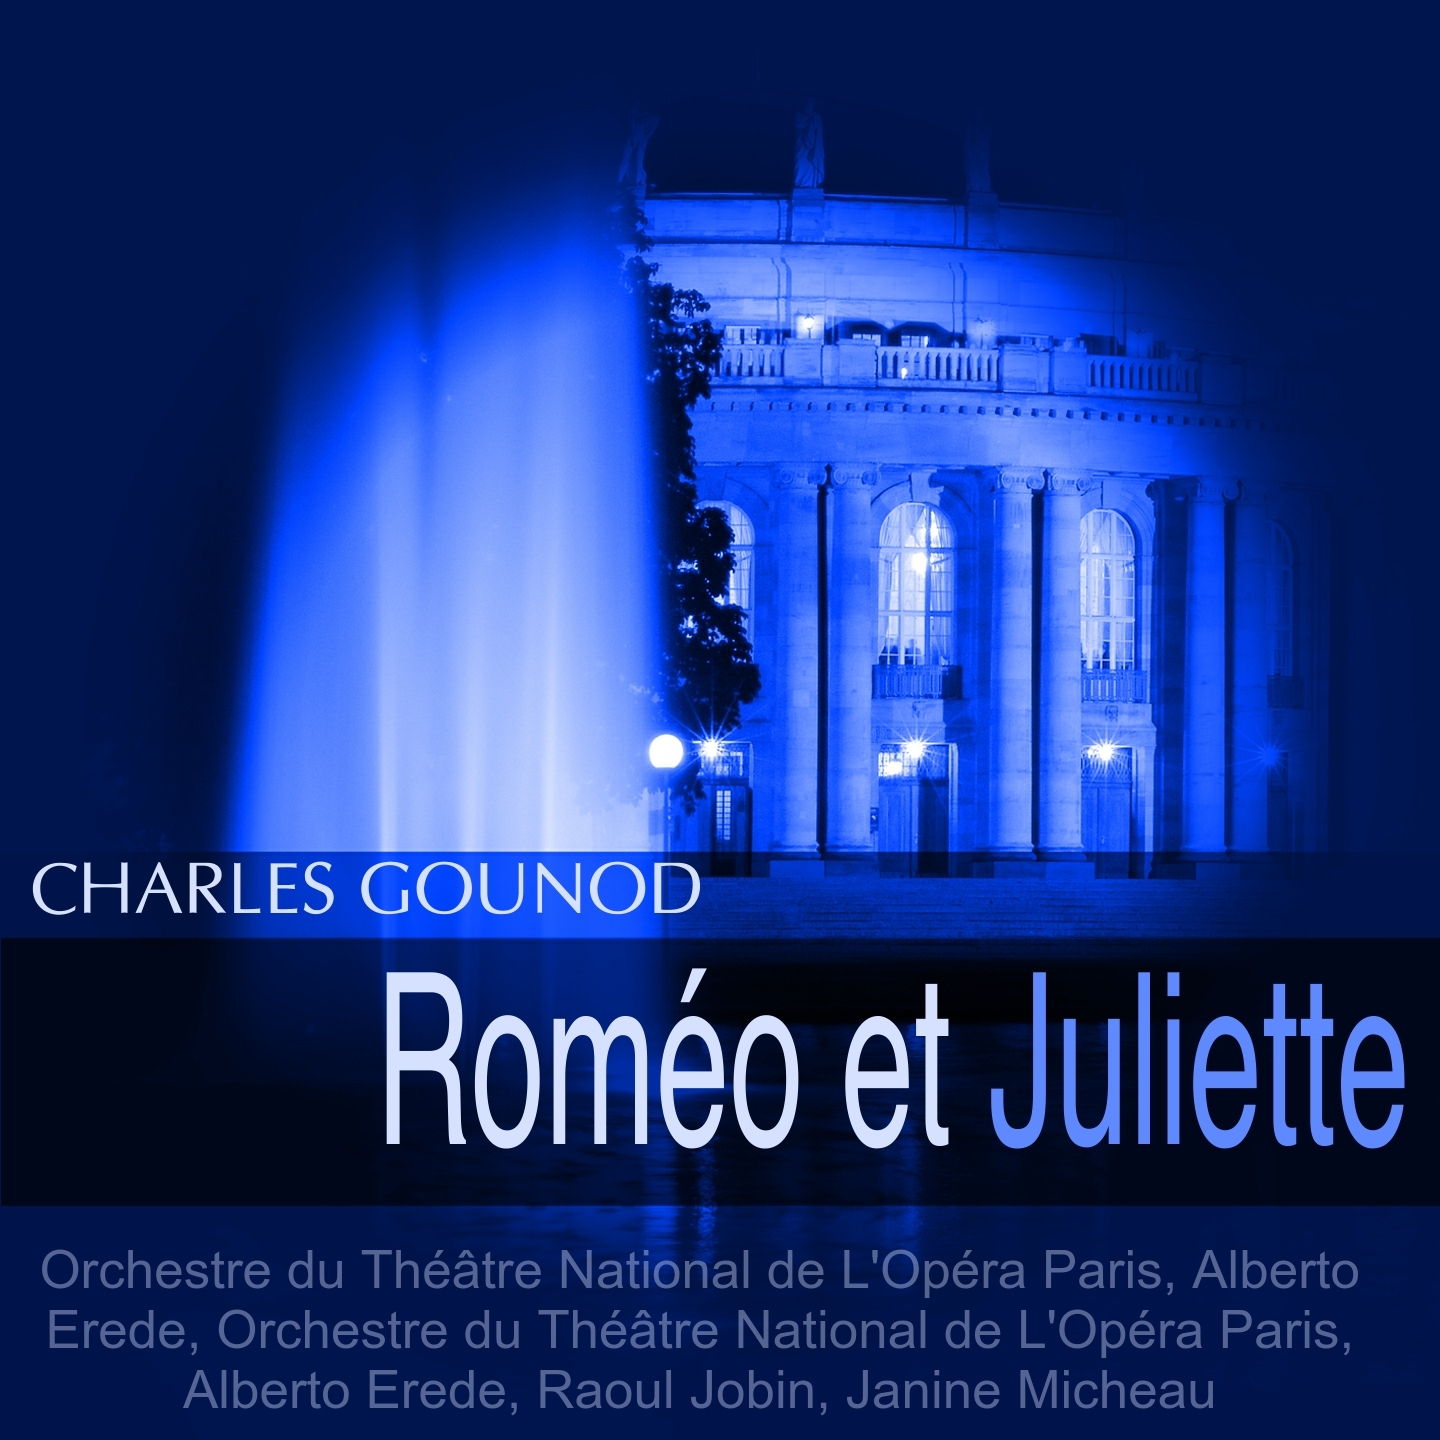 Rome o et Juliette, Act IV: " Mon pe re! Tout m' accable!" Juliette